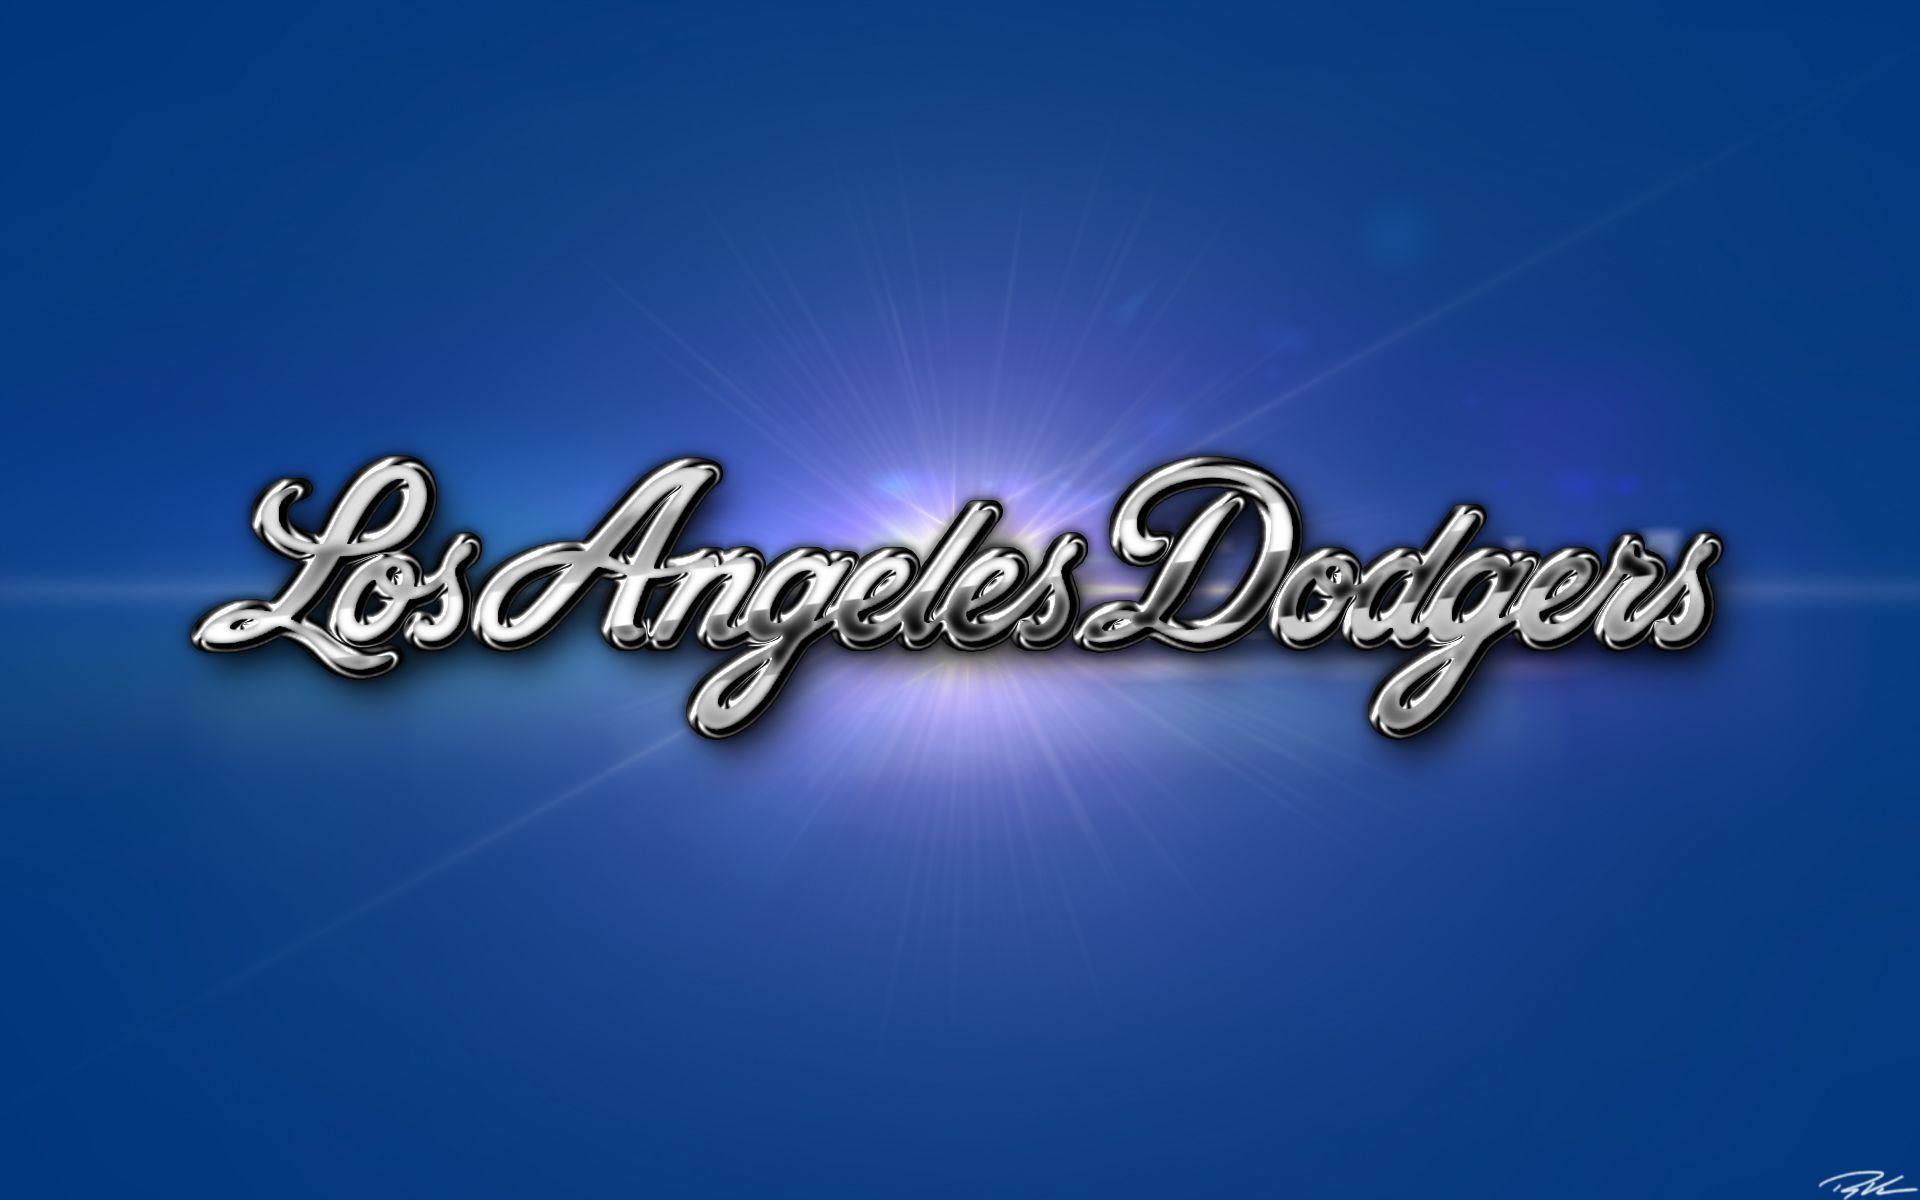 LA Dodgers iPhone Wallpaper